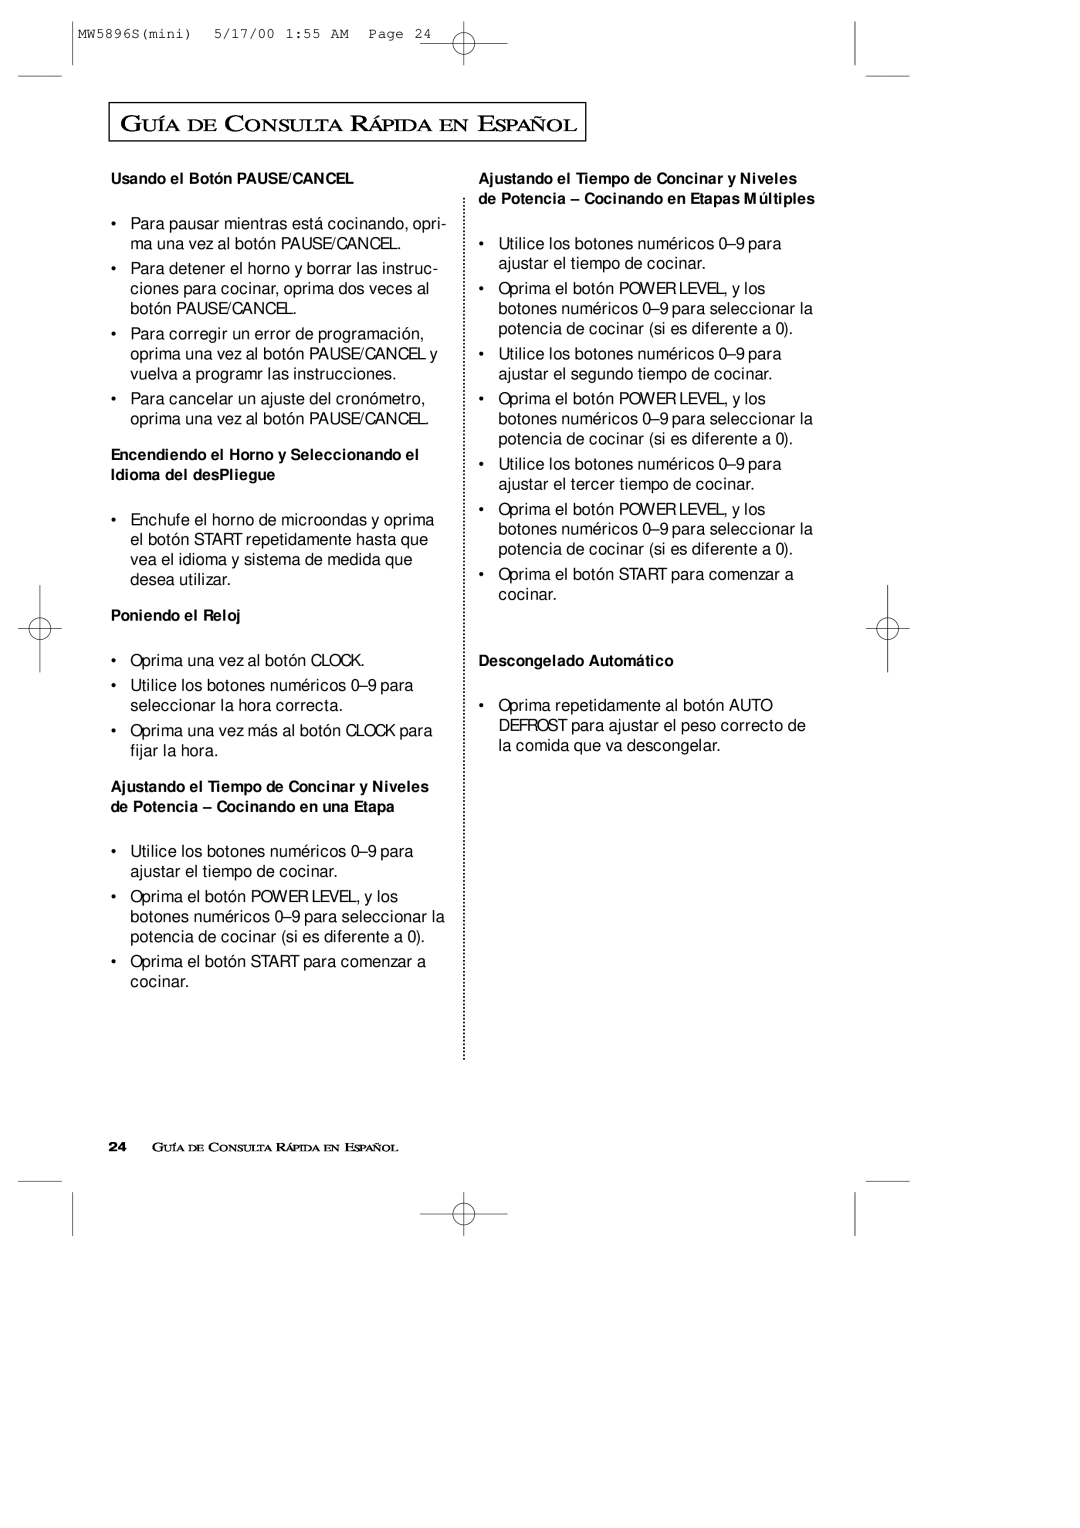 Samsung MW5892S owner manual Guía De Consulta Rápida En Español, Usando el Botón PAUSE/CANCEL, Poniendo el Reloj 